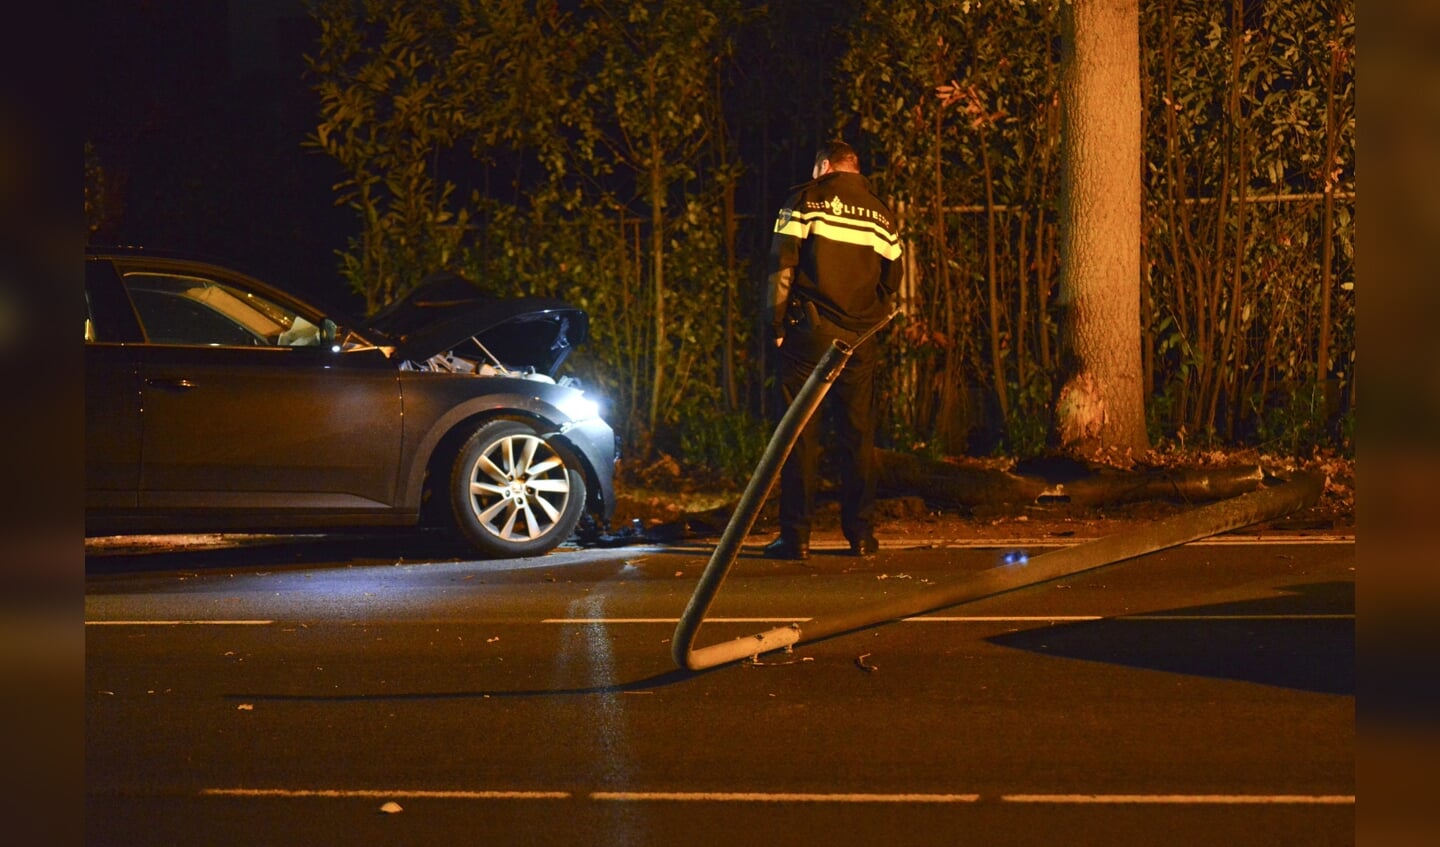 Een persoon raakte gewond bij een ongeval op de Oosterhoutseweg in Teteringen.